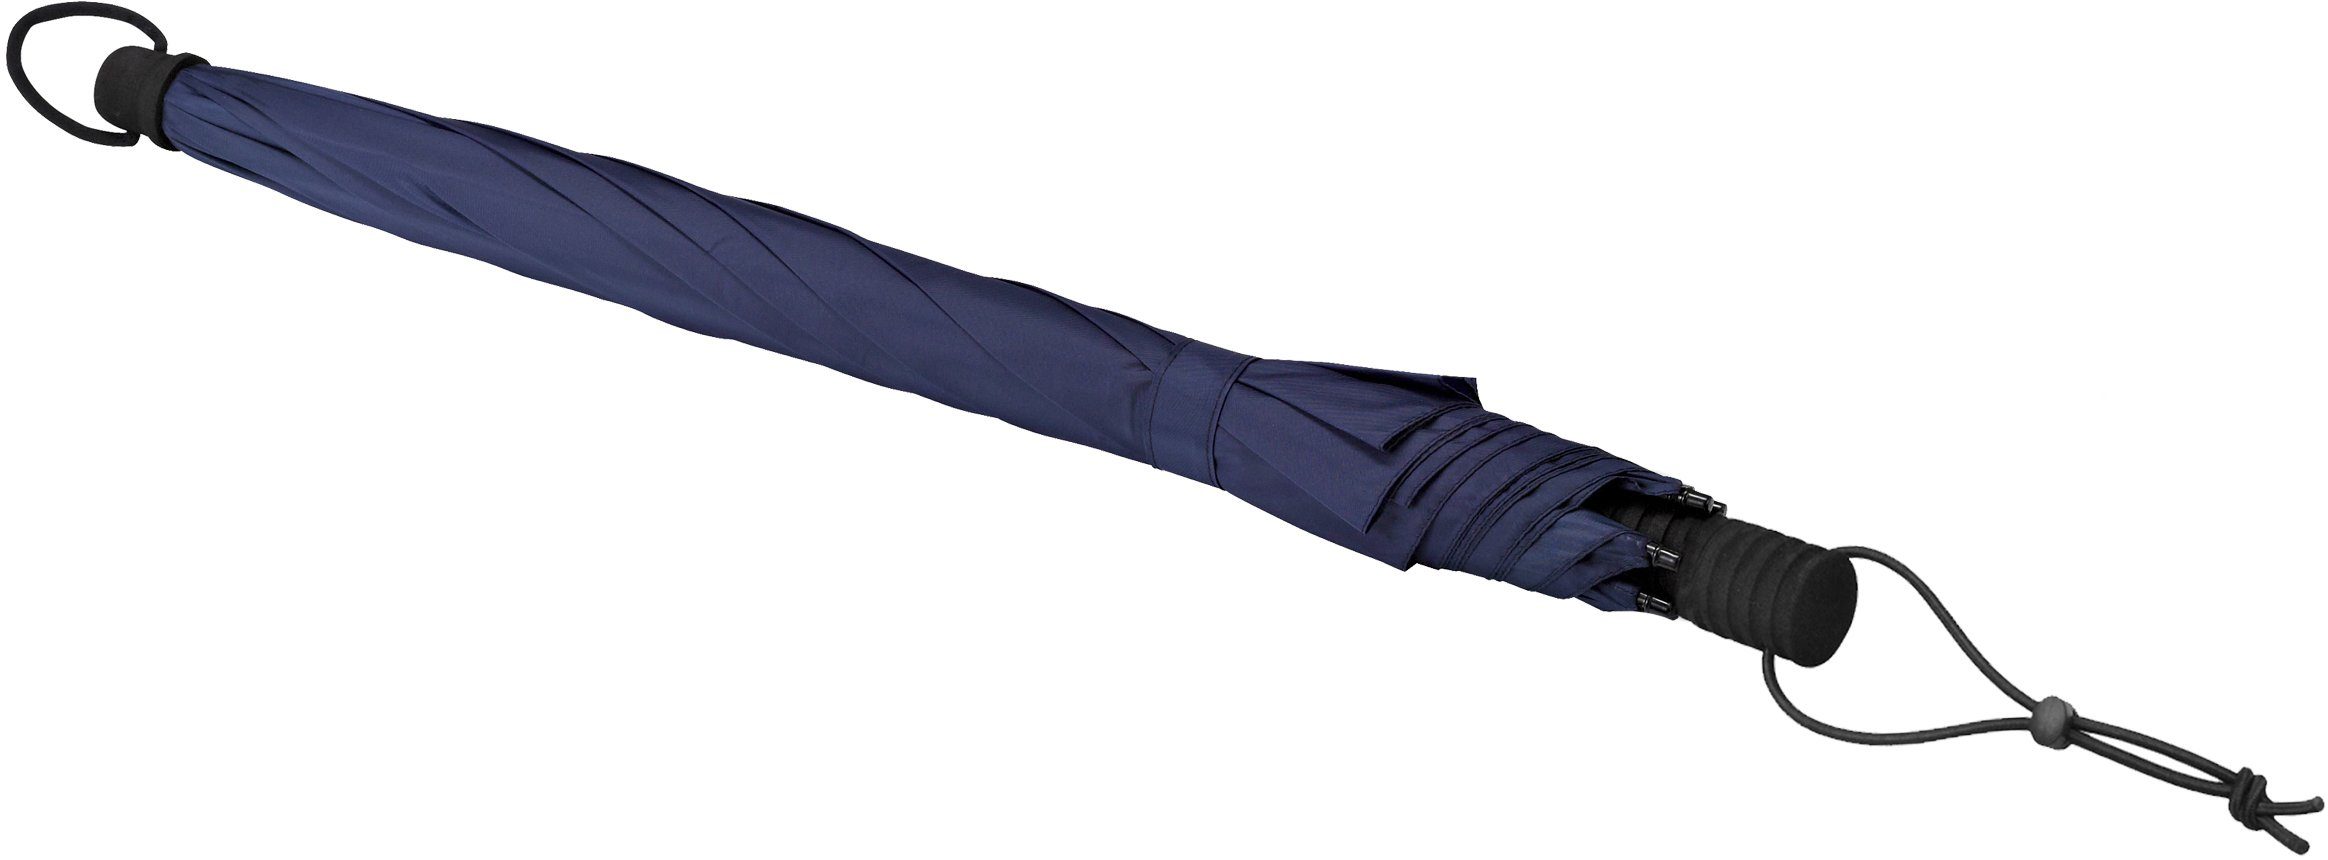 EuroSCHIRM® Stockregenschirm Swing handsfree, marineblau, tragbar handfrei